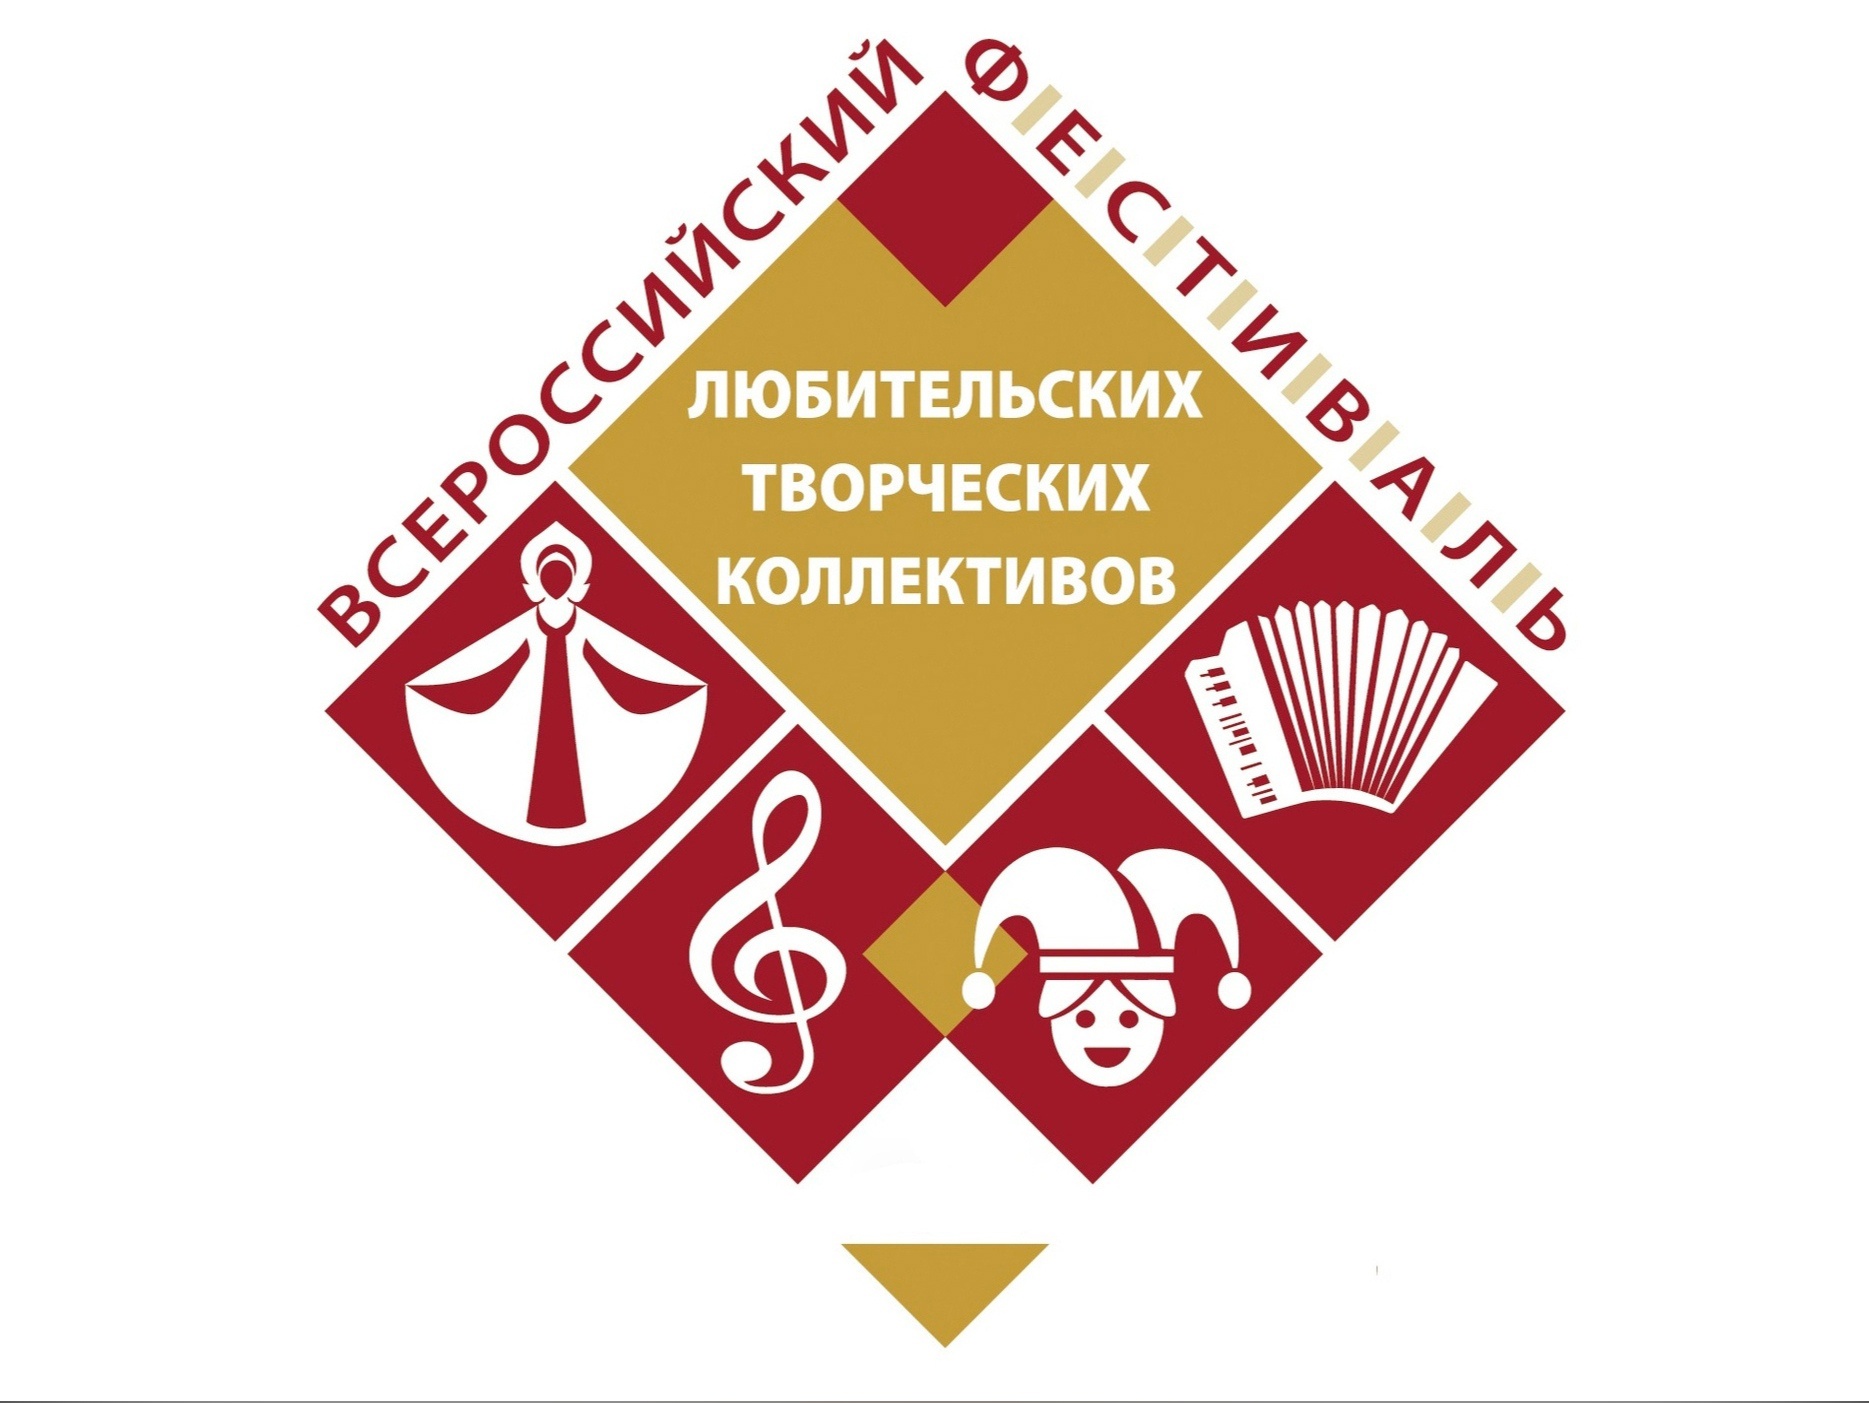 Творческие коллективы Ульяновска приглашают принять участие во всероссийском фестивале.